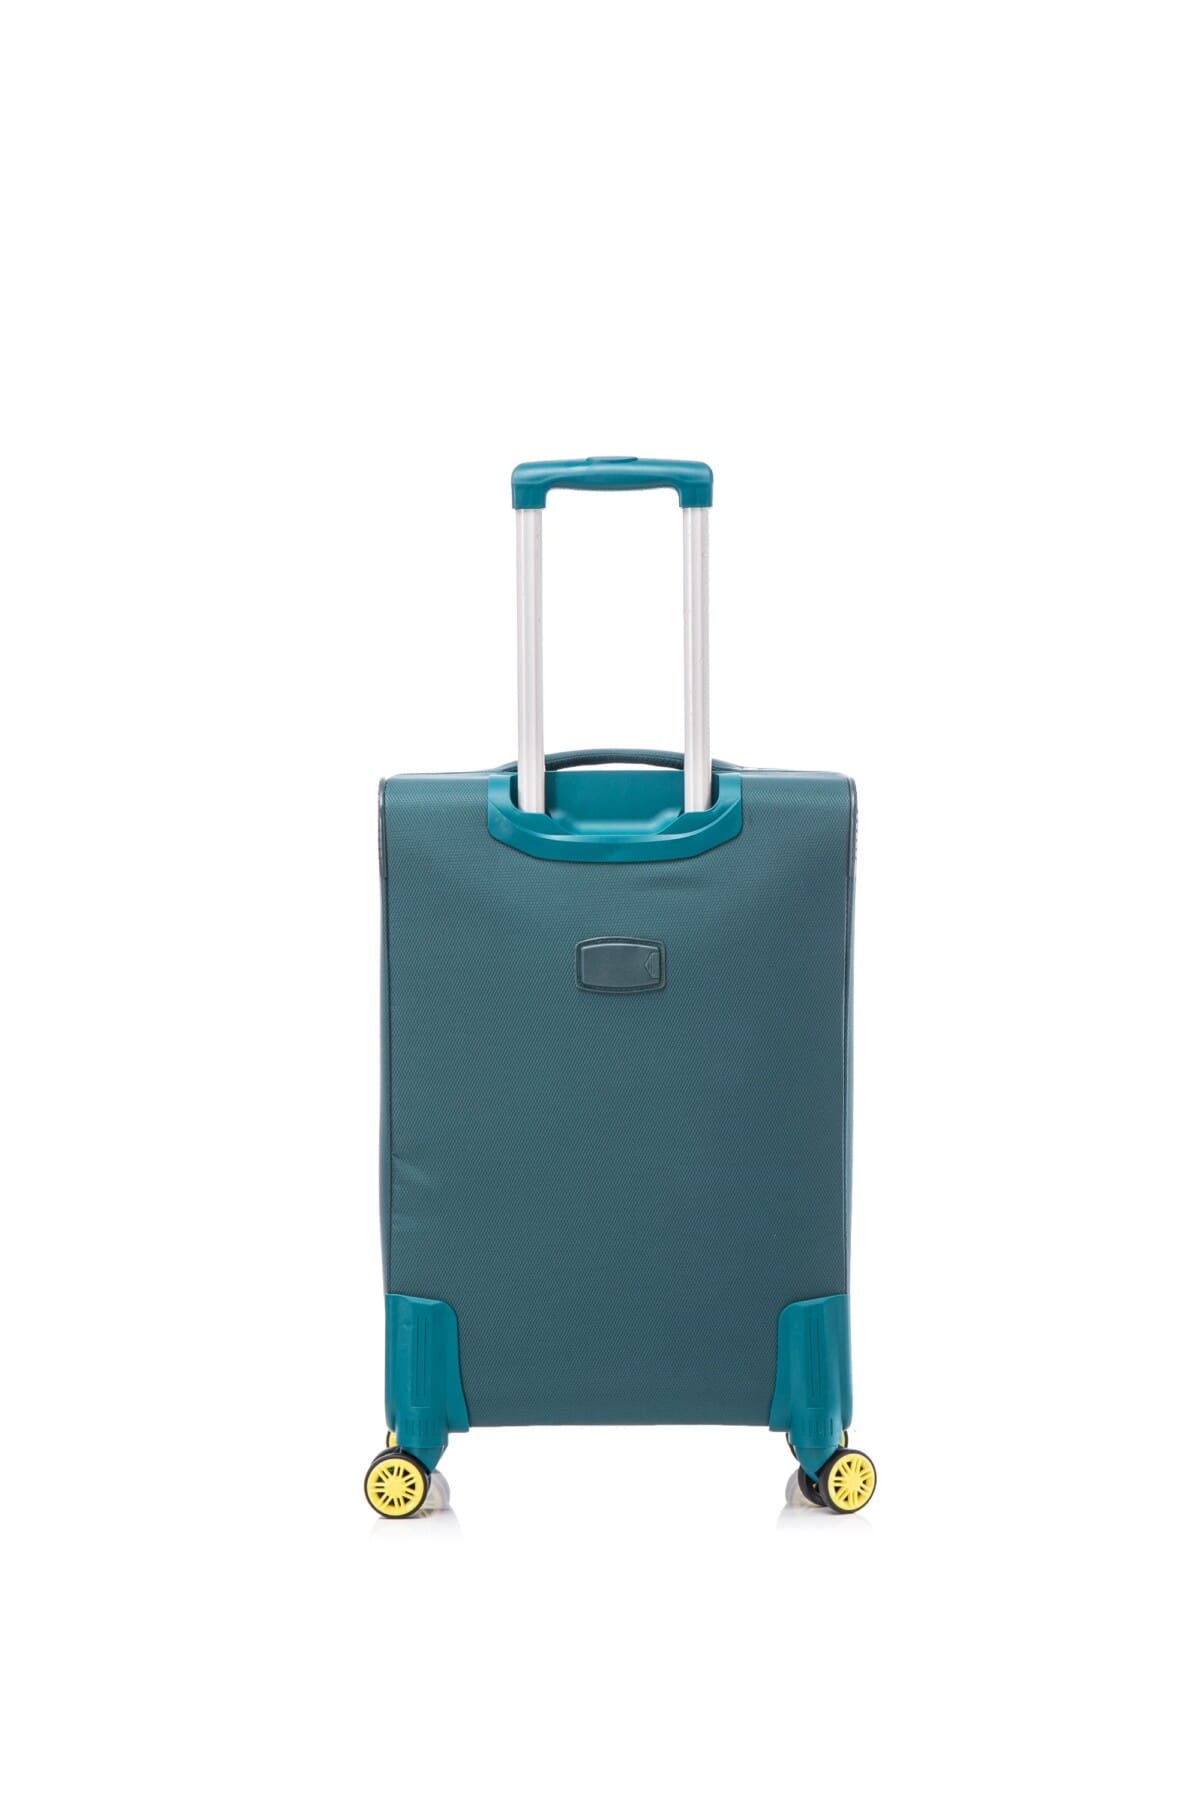 πίσω όψη βαλίτσας σε πετρόλ χρώμα